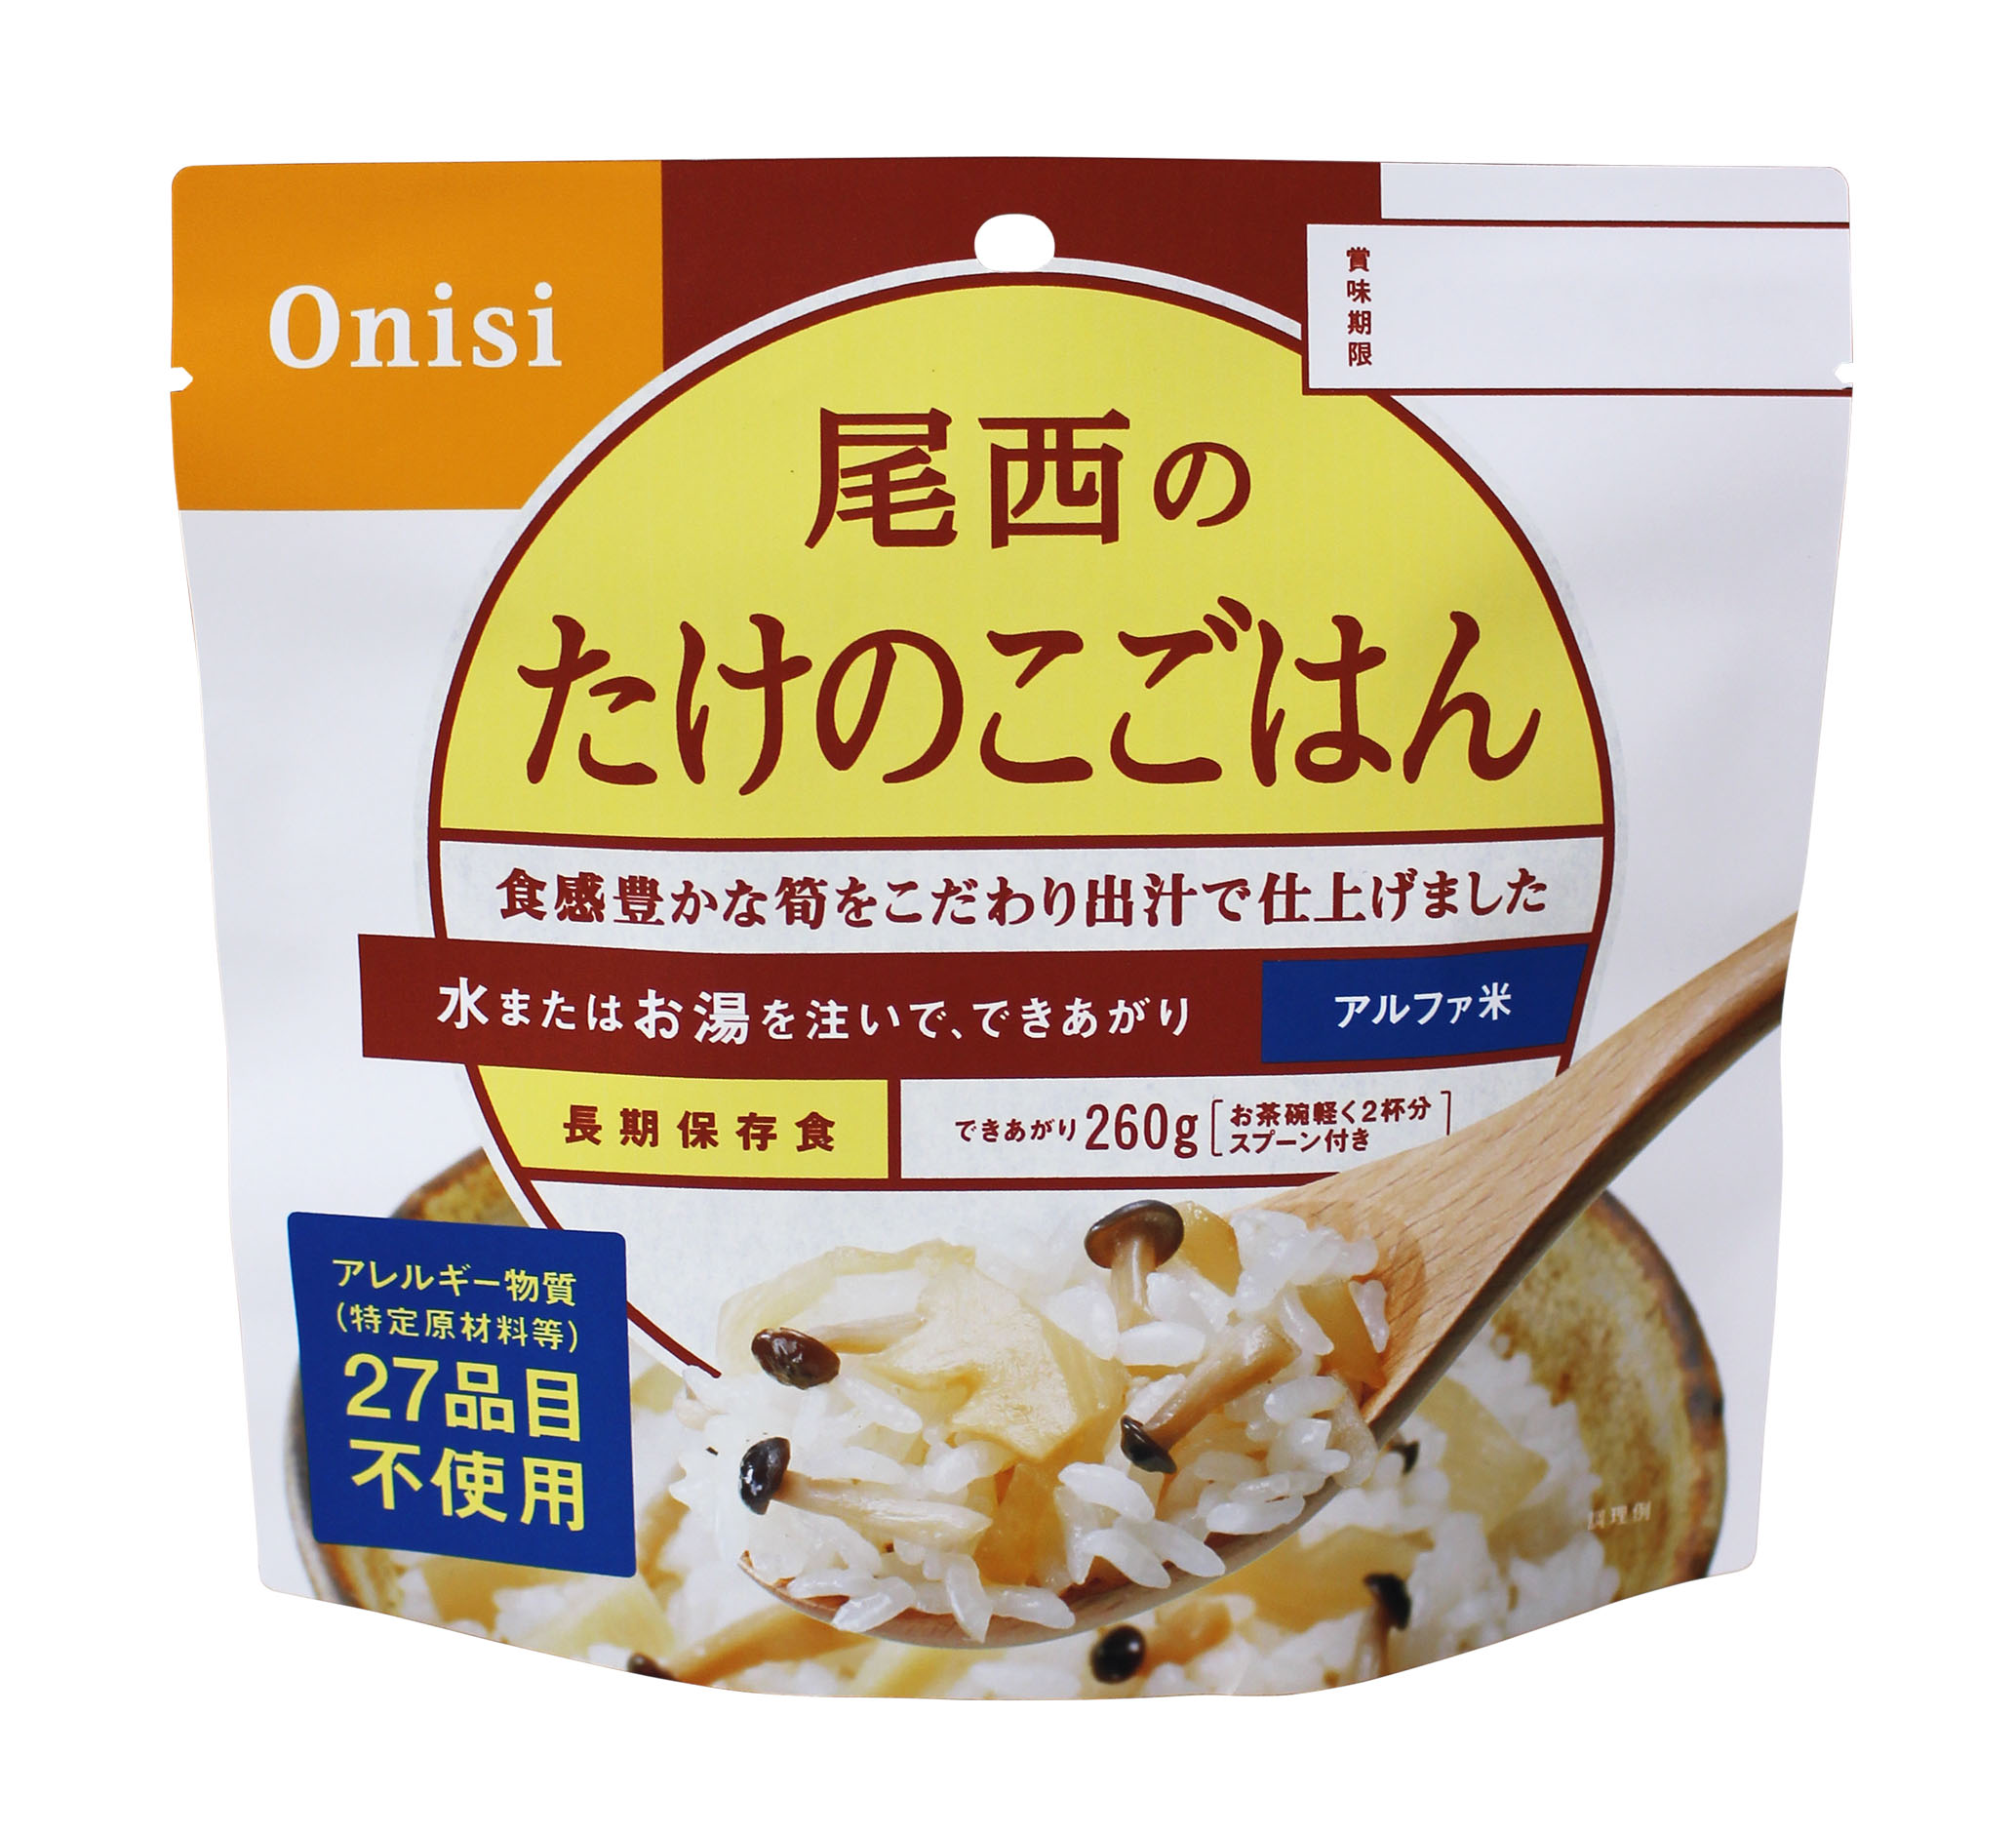 アルファ米シリーズの新しい味と、玄米粉を使った山菜めんを新発売